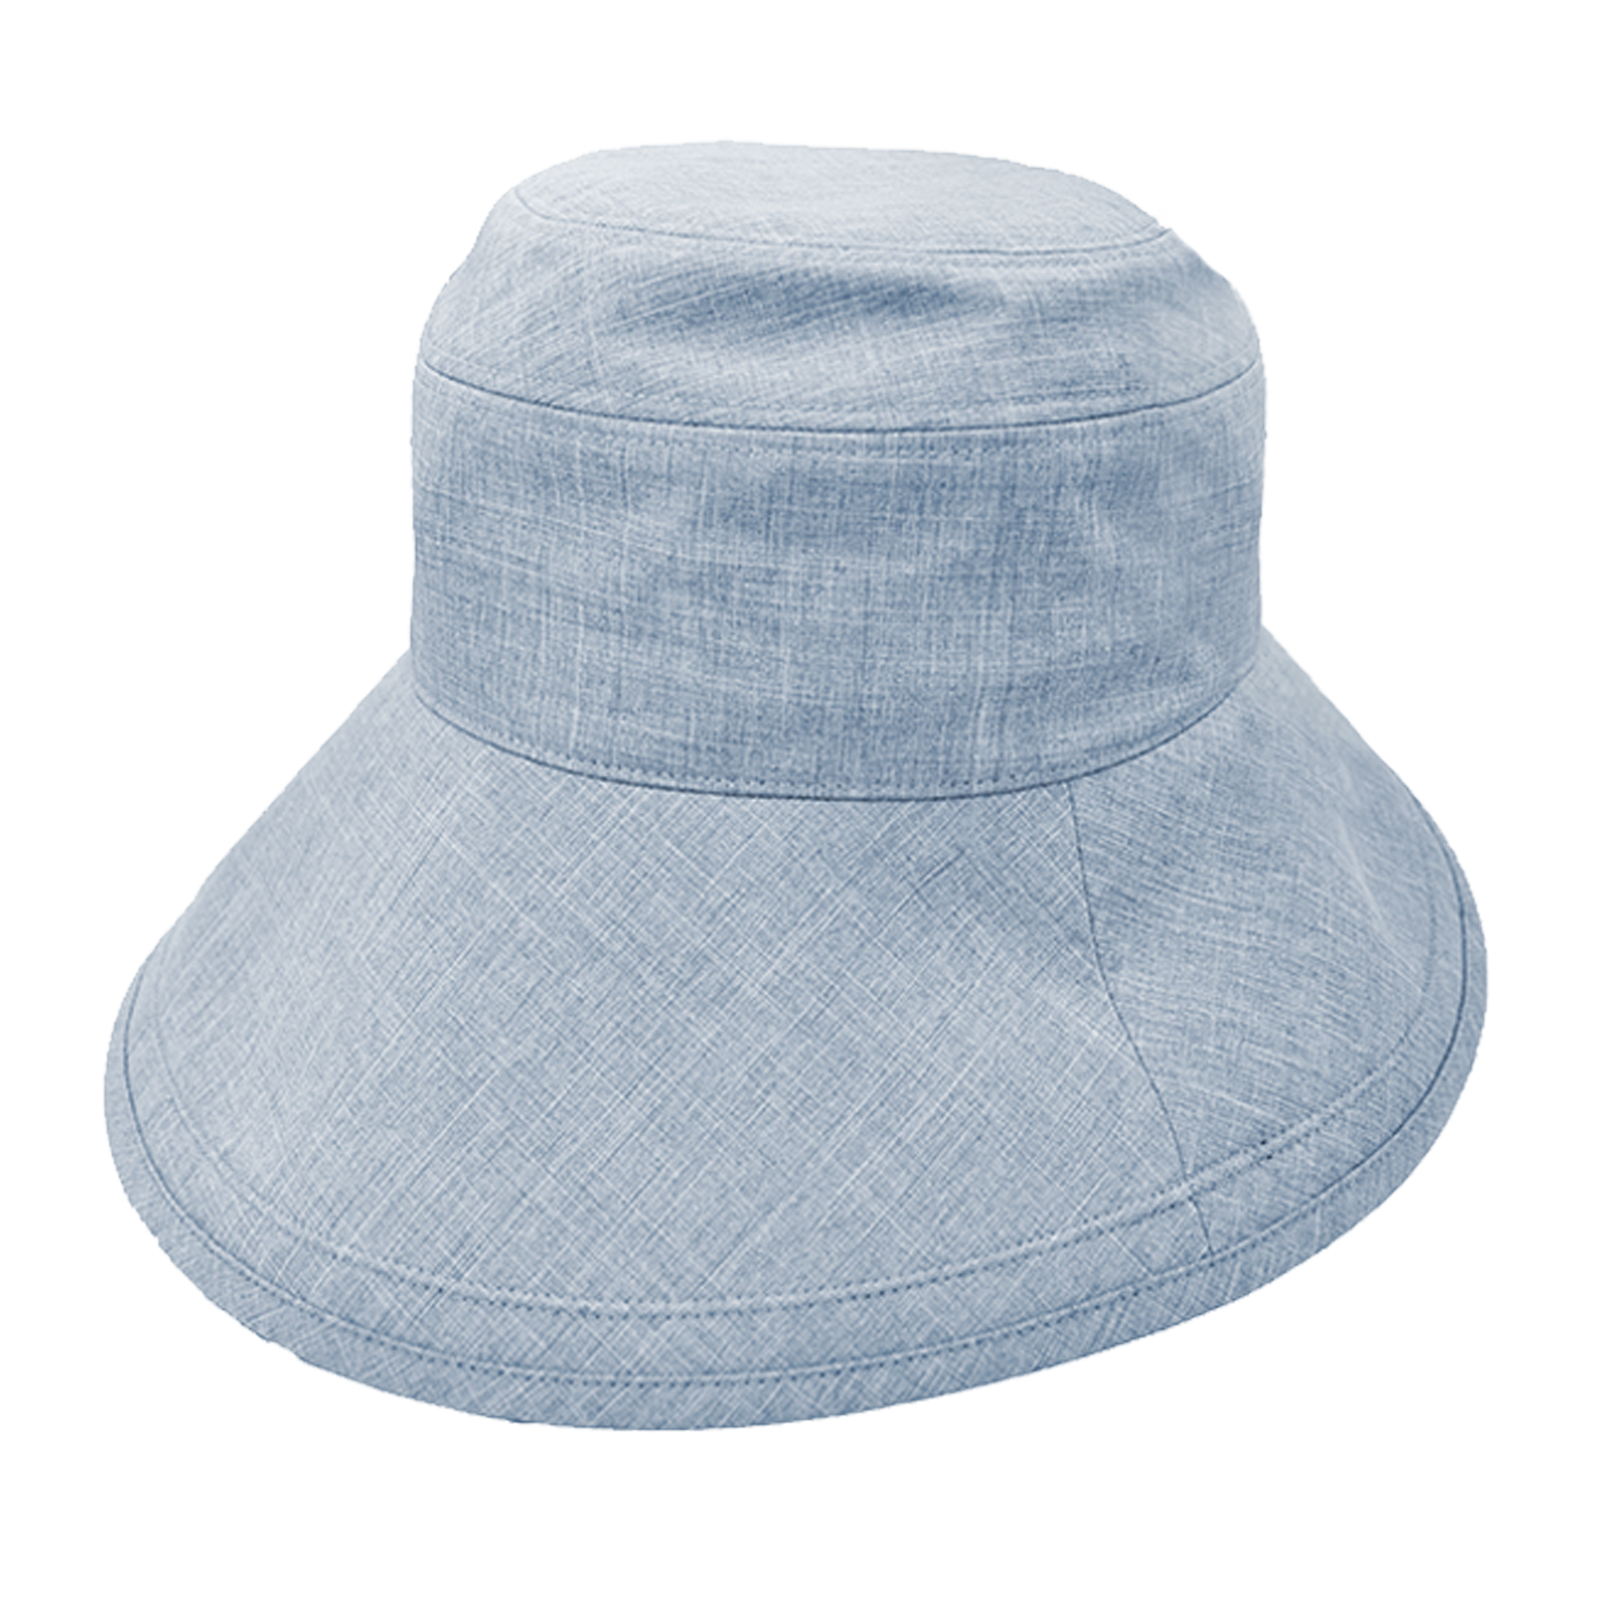 ハット レディース uv 帽子 完全遮光 日焼け防止 プレーン（総遮光）つば13cm ハット UVカット つば広 接触冷感 制菌加工